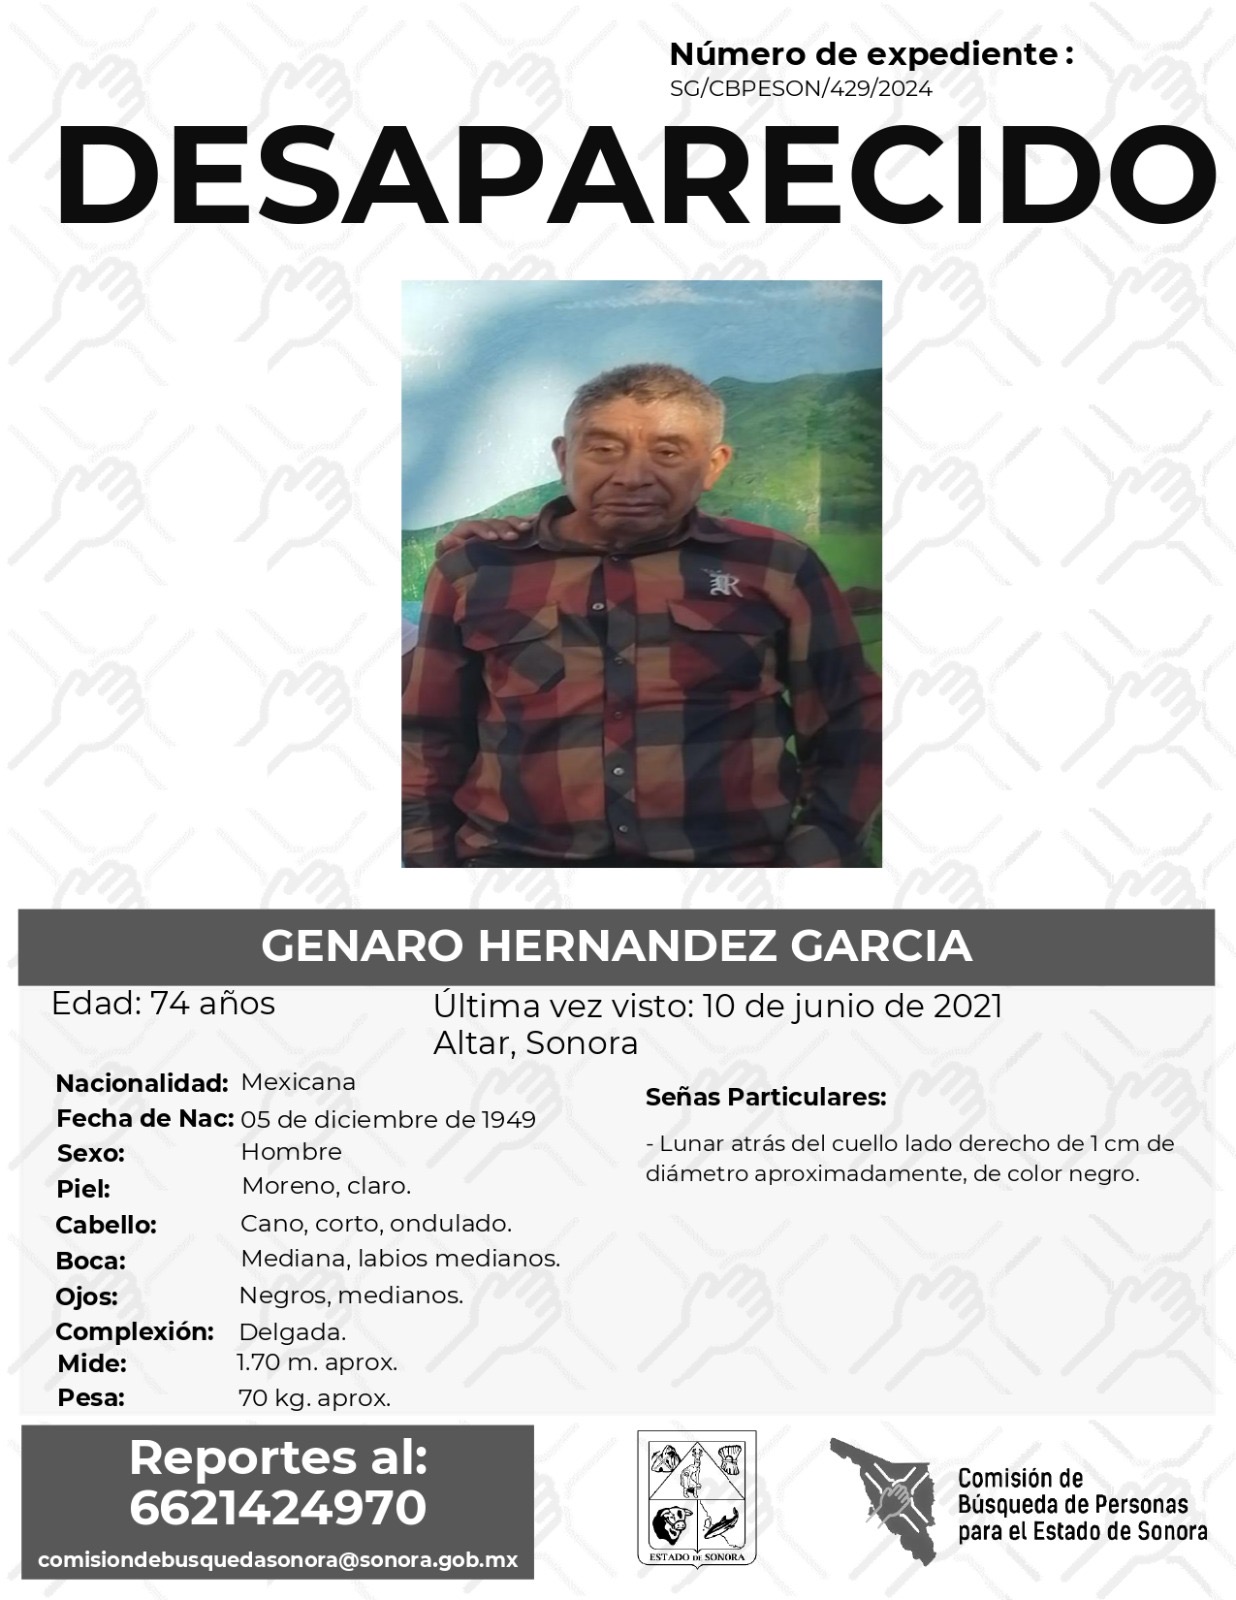 GENARO HERNANDEZ GARCIA - DESAPARECIDO